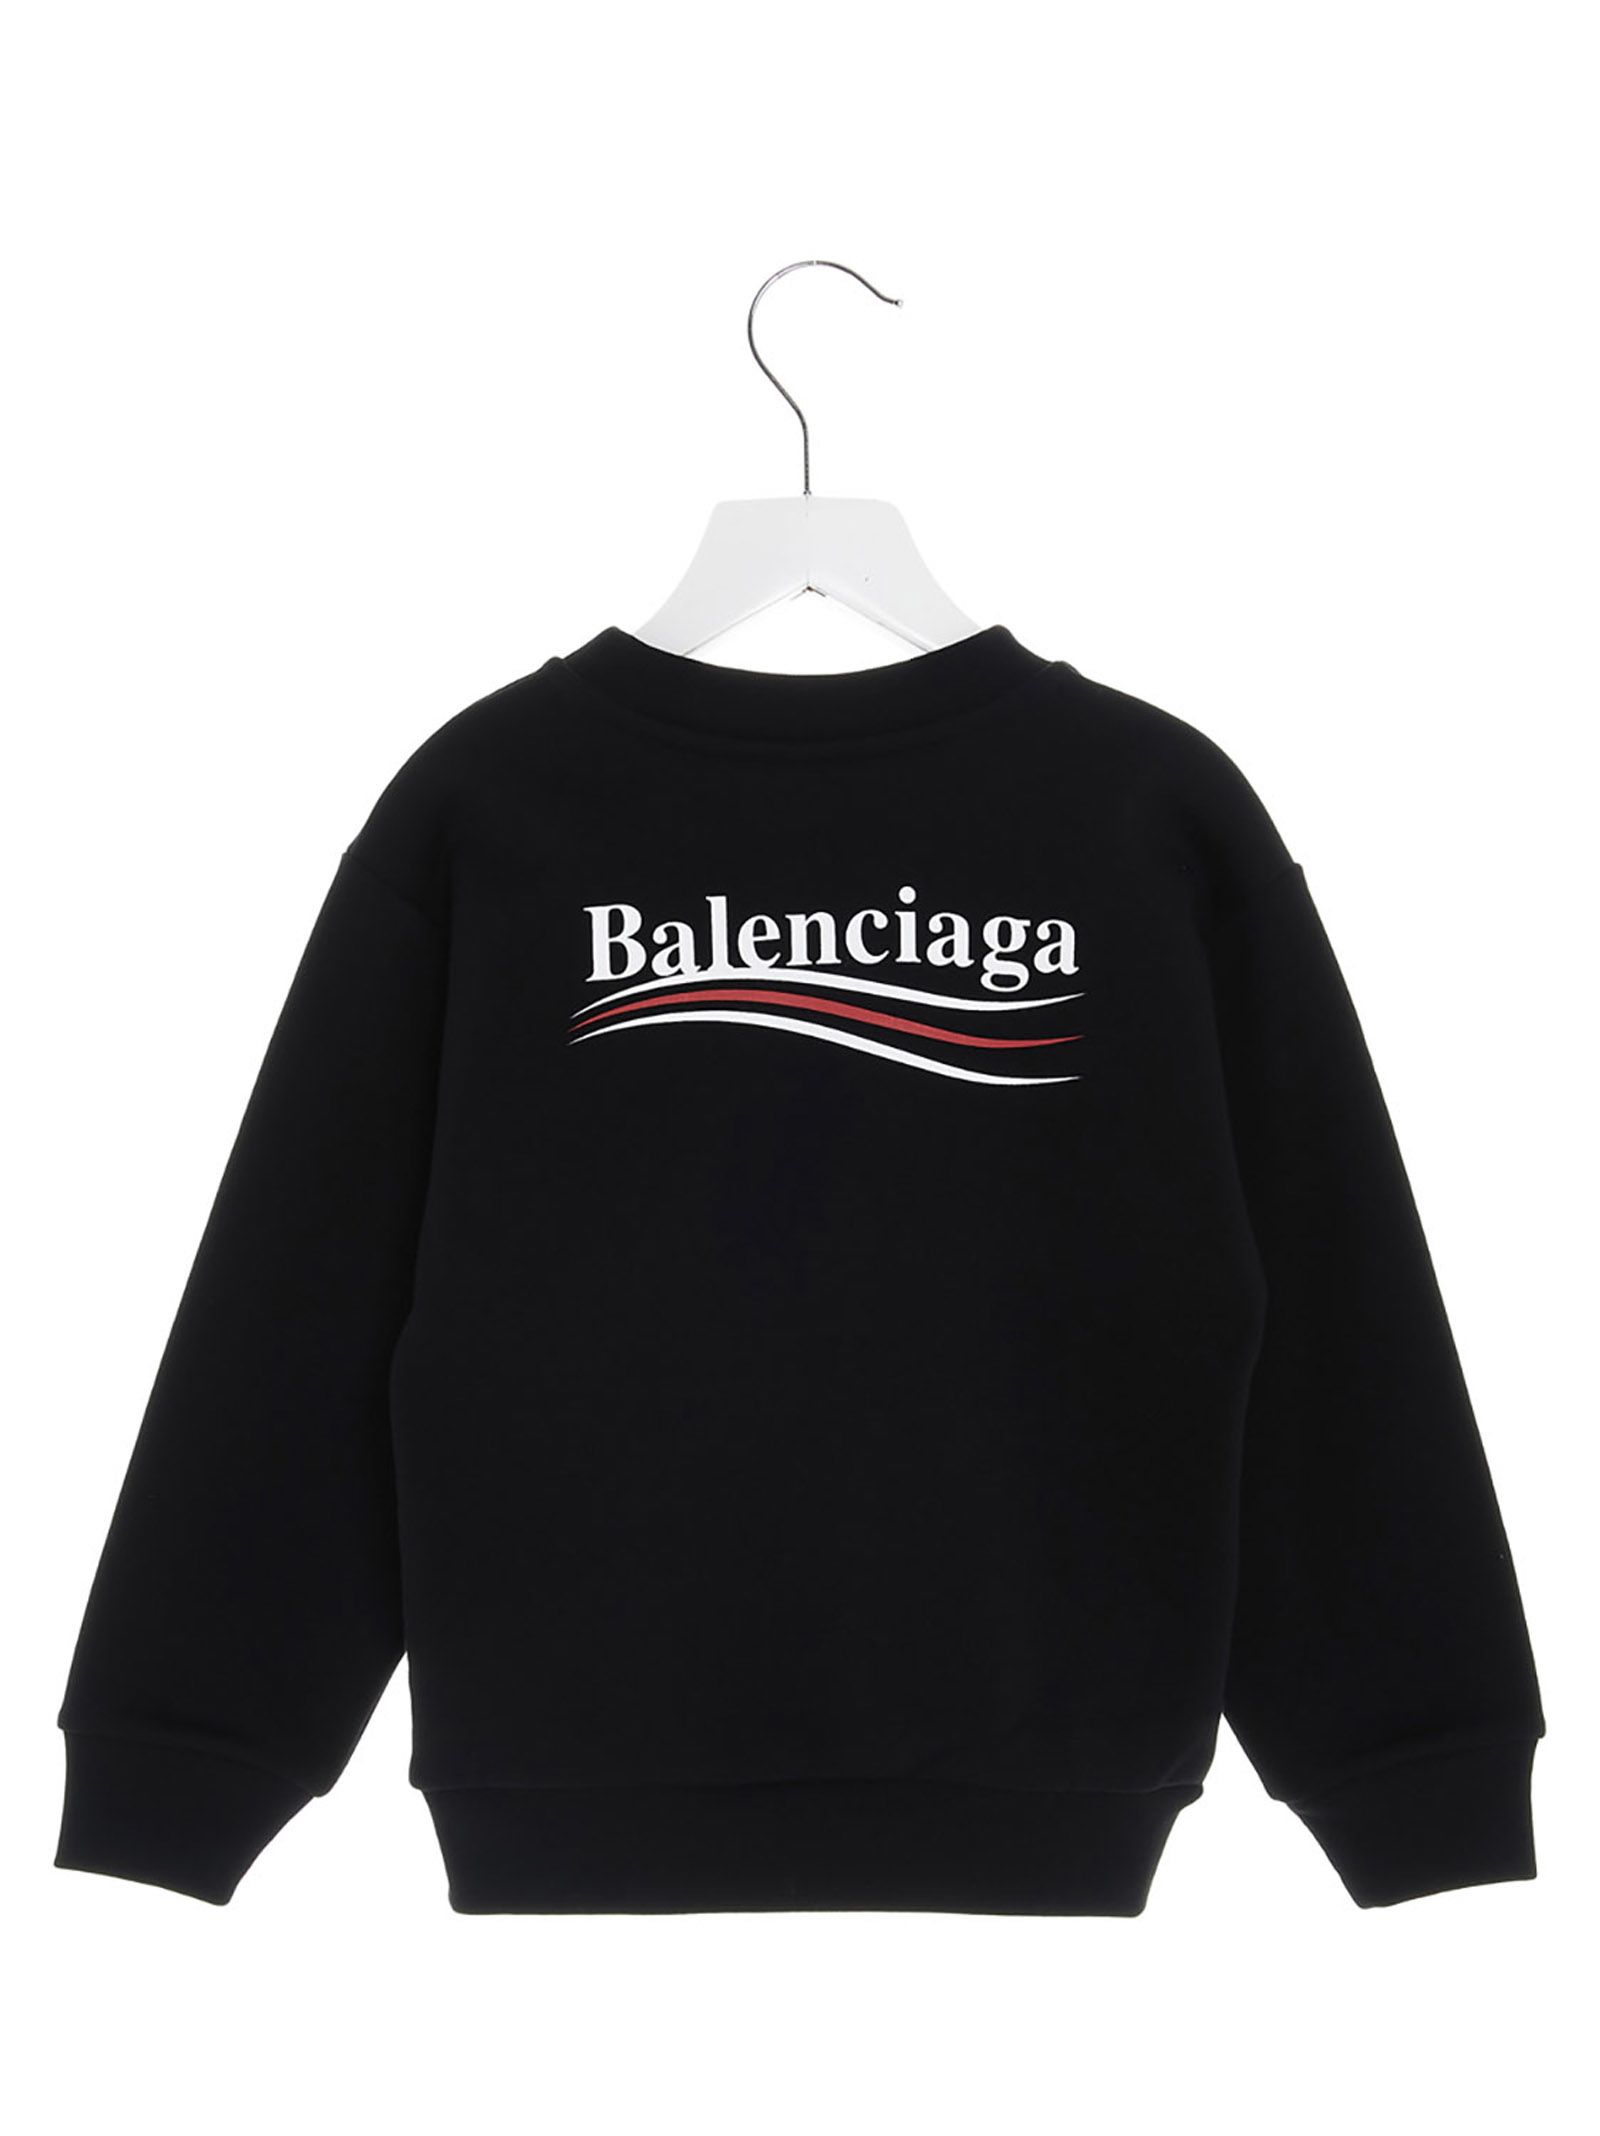 balenciaga campaign sweater